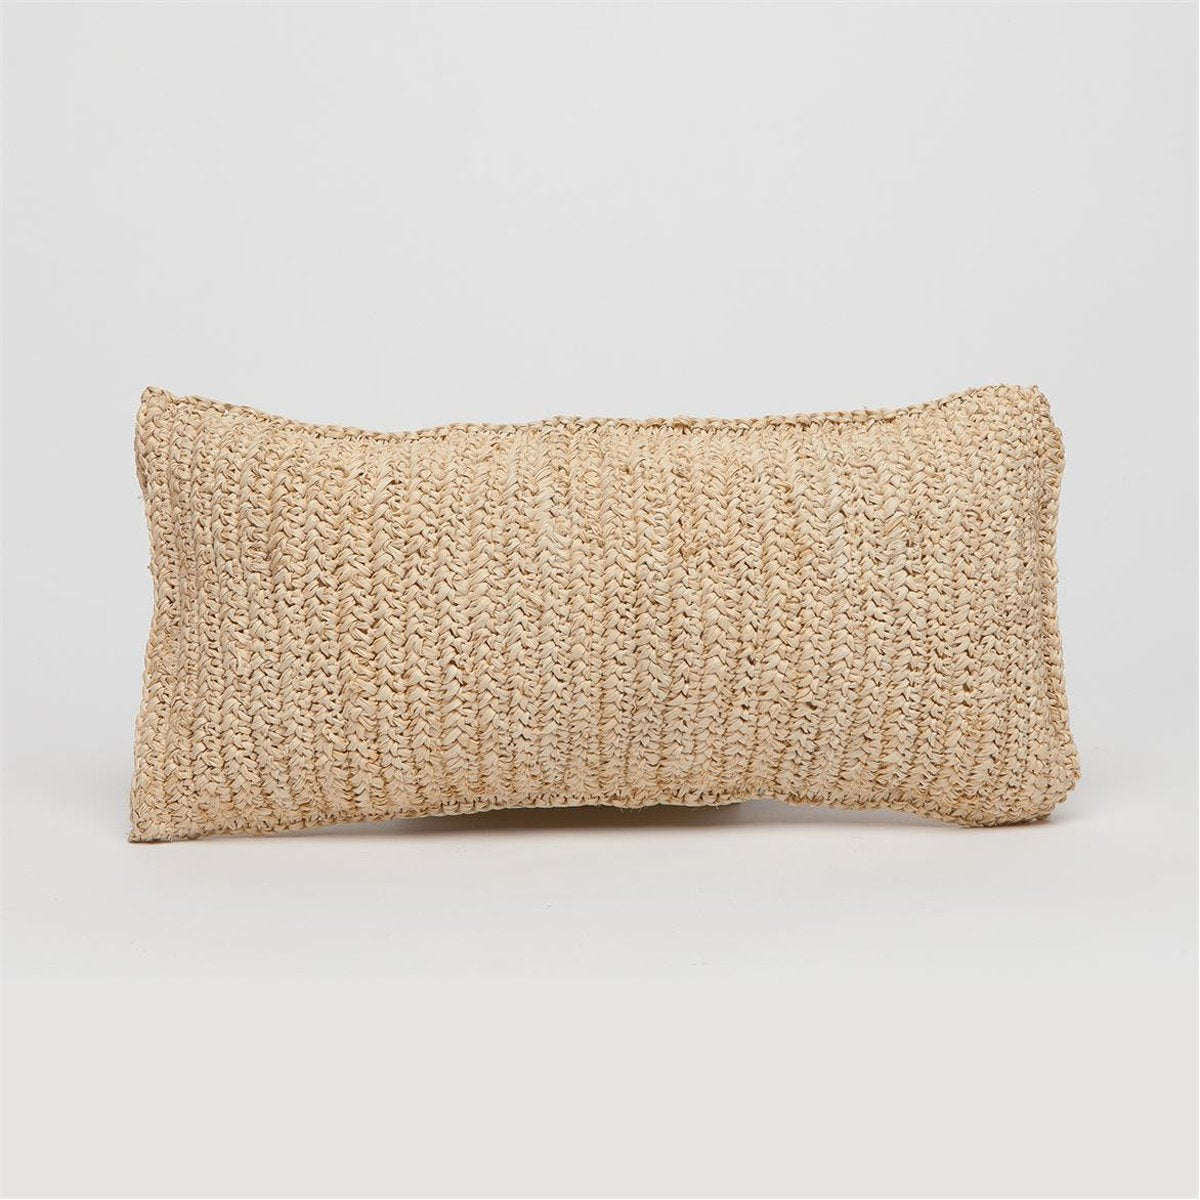 Made Goods Jasper Woven Pillows in Natural Raffia, Set of 2